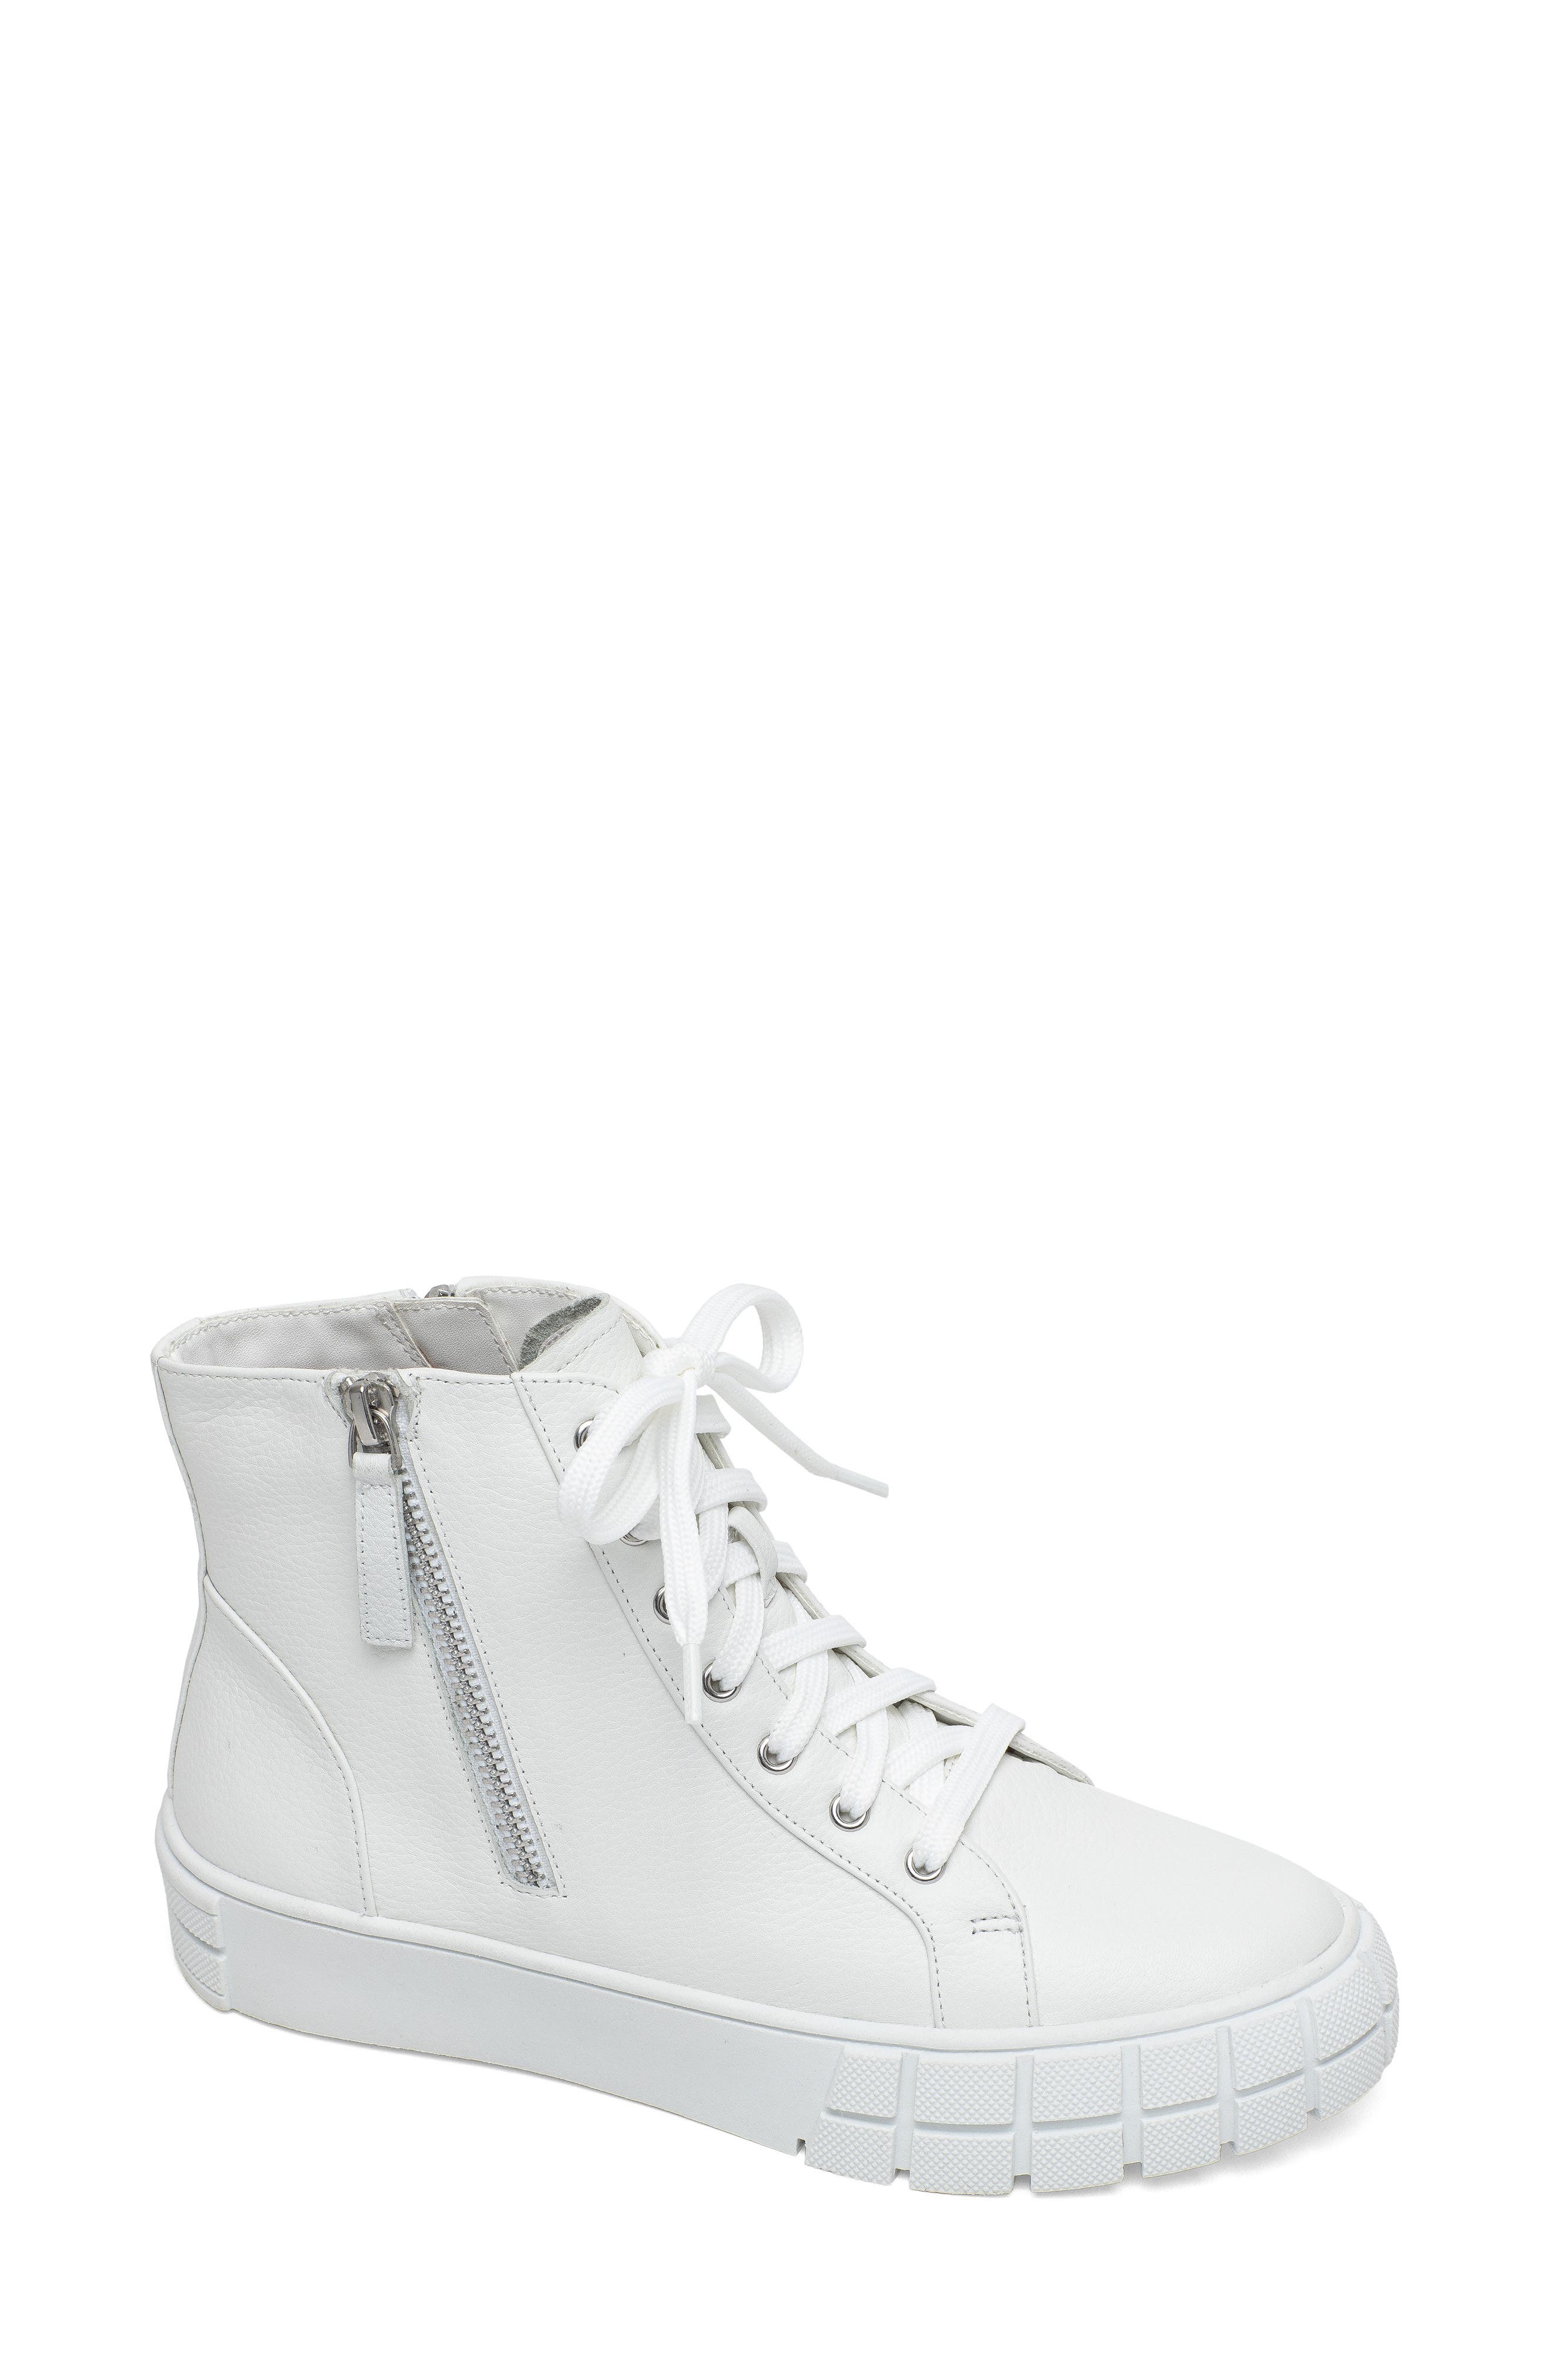 Linea Paolo Gio Sneaker in Winter White